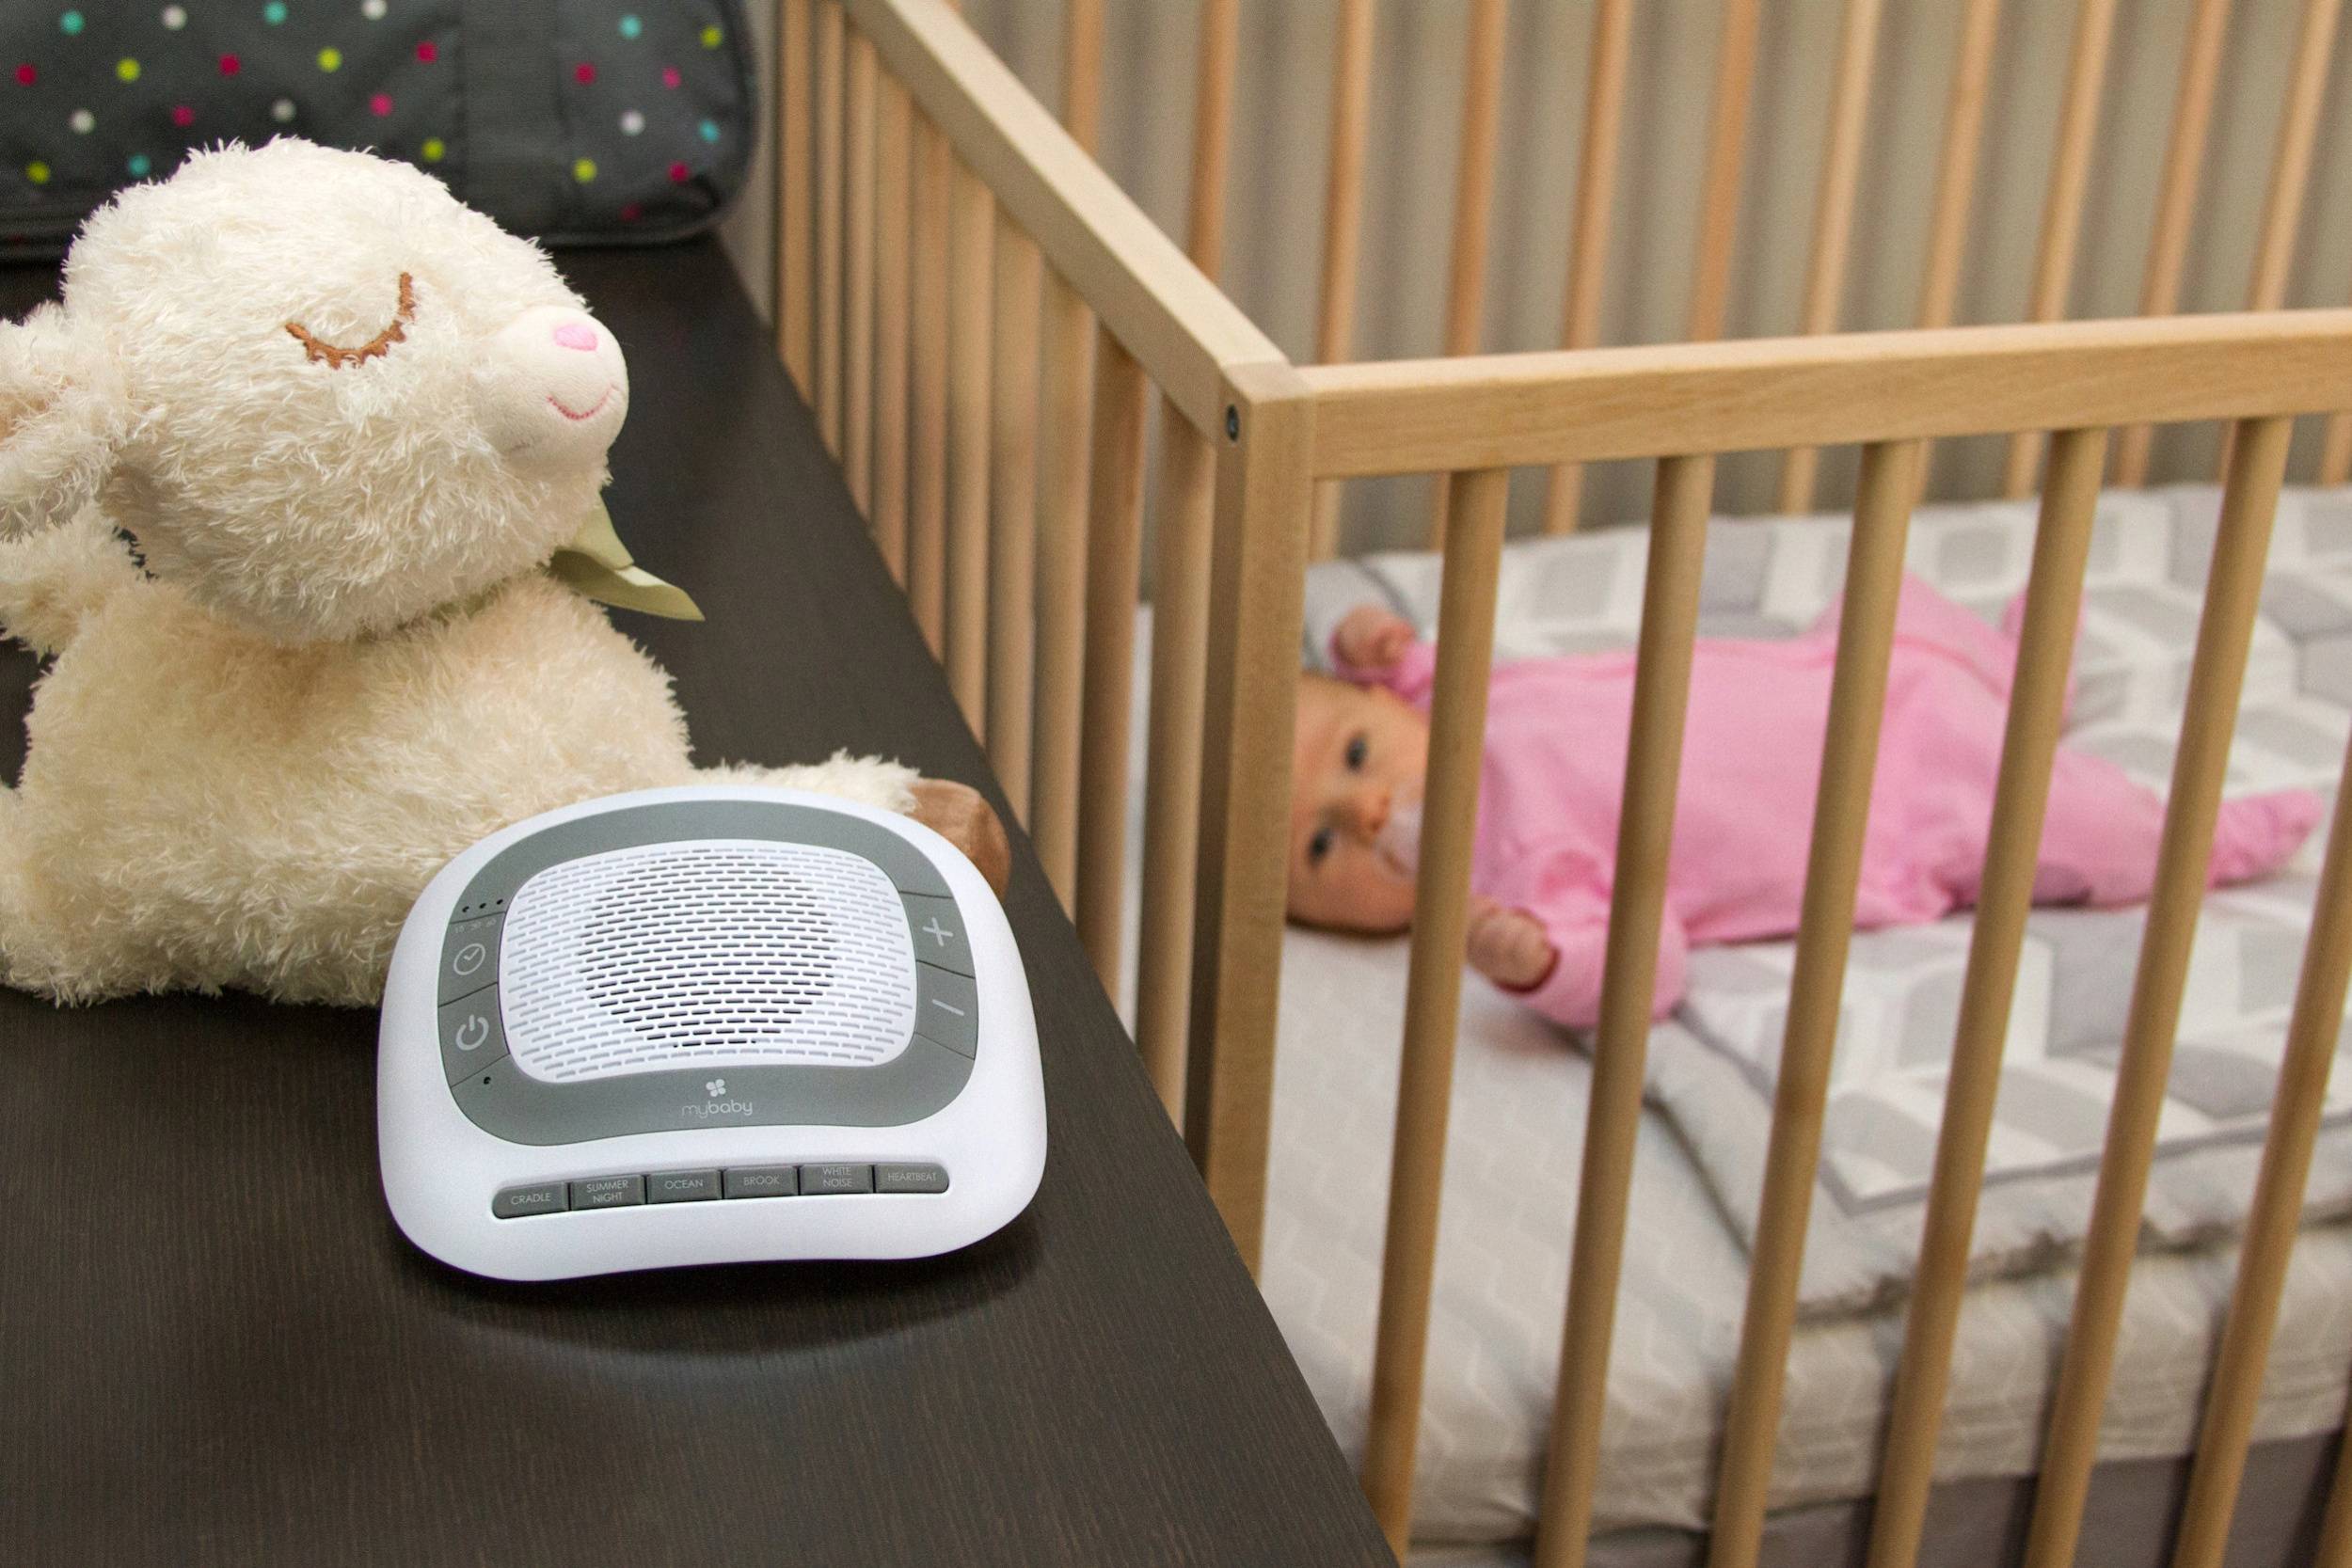 Белый шум для крепкого детского сна: какой выбрать и как правильно использовать